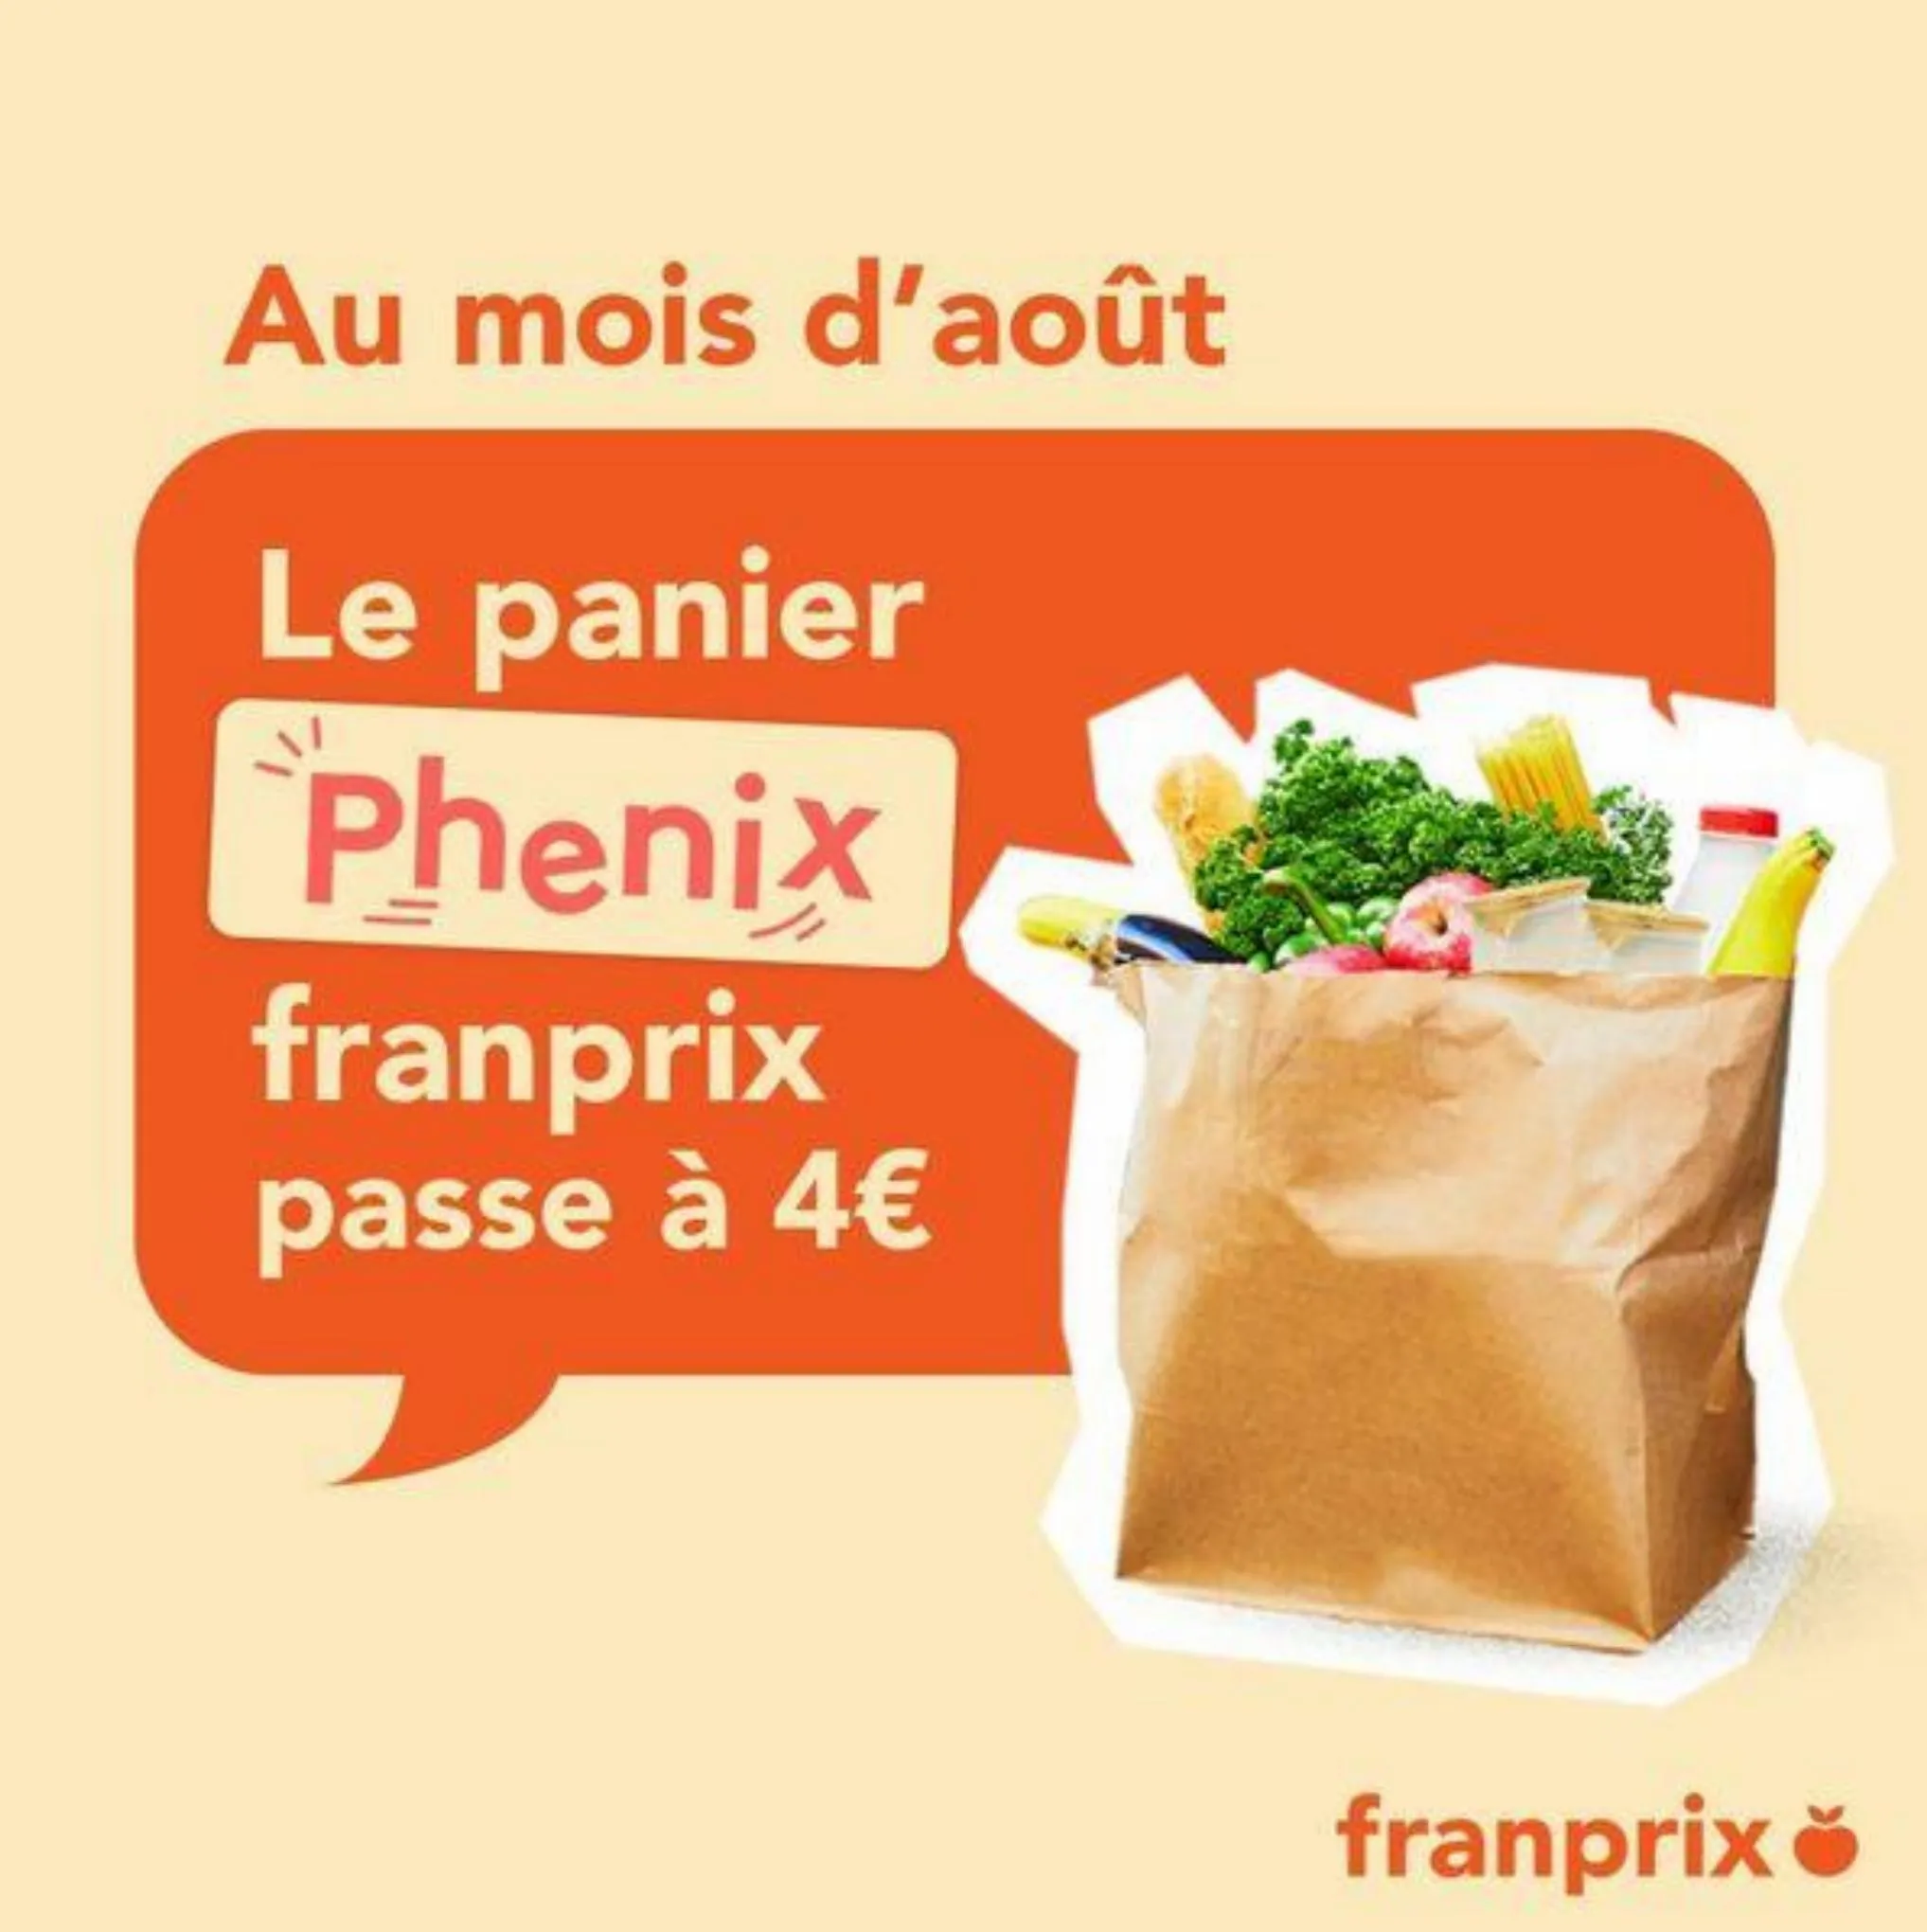 Catalogue Le panier franprix x Phenix passe de 5€ à 4€, page 00001